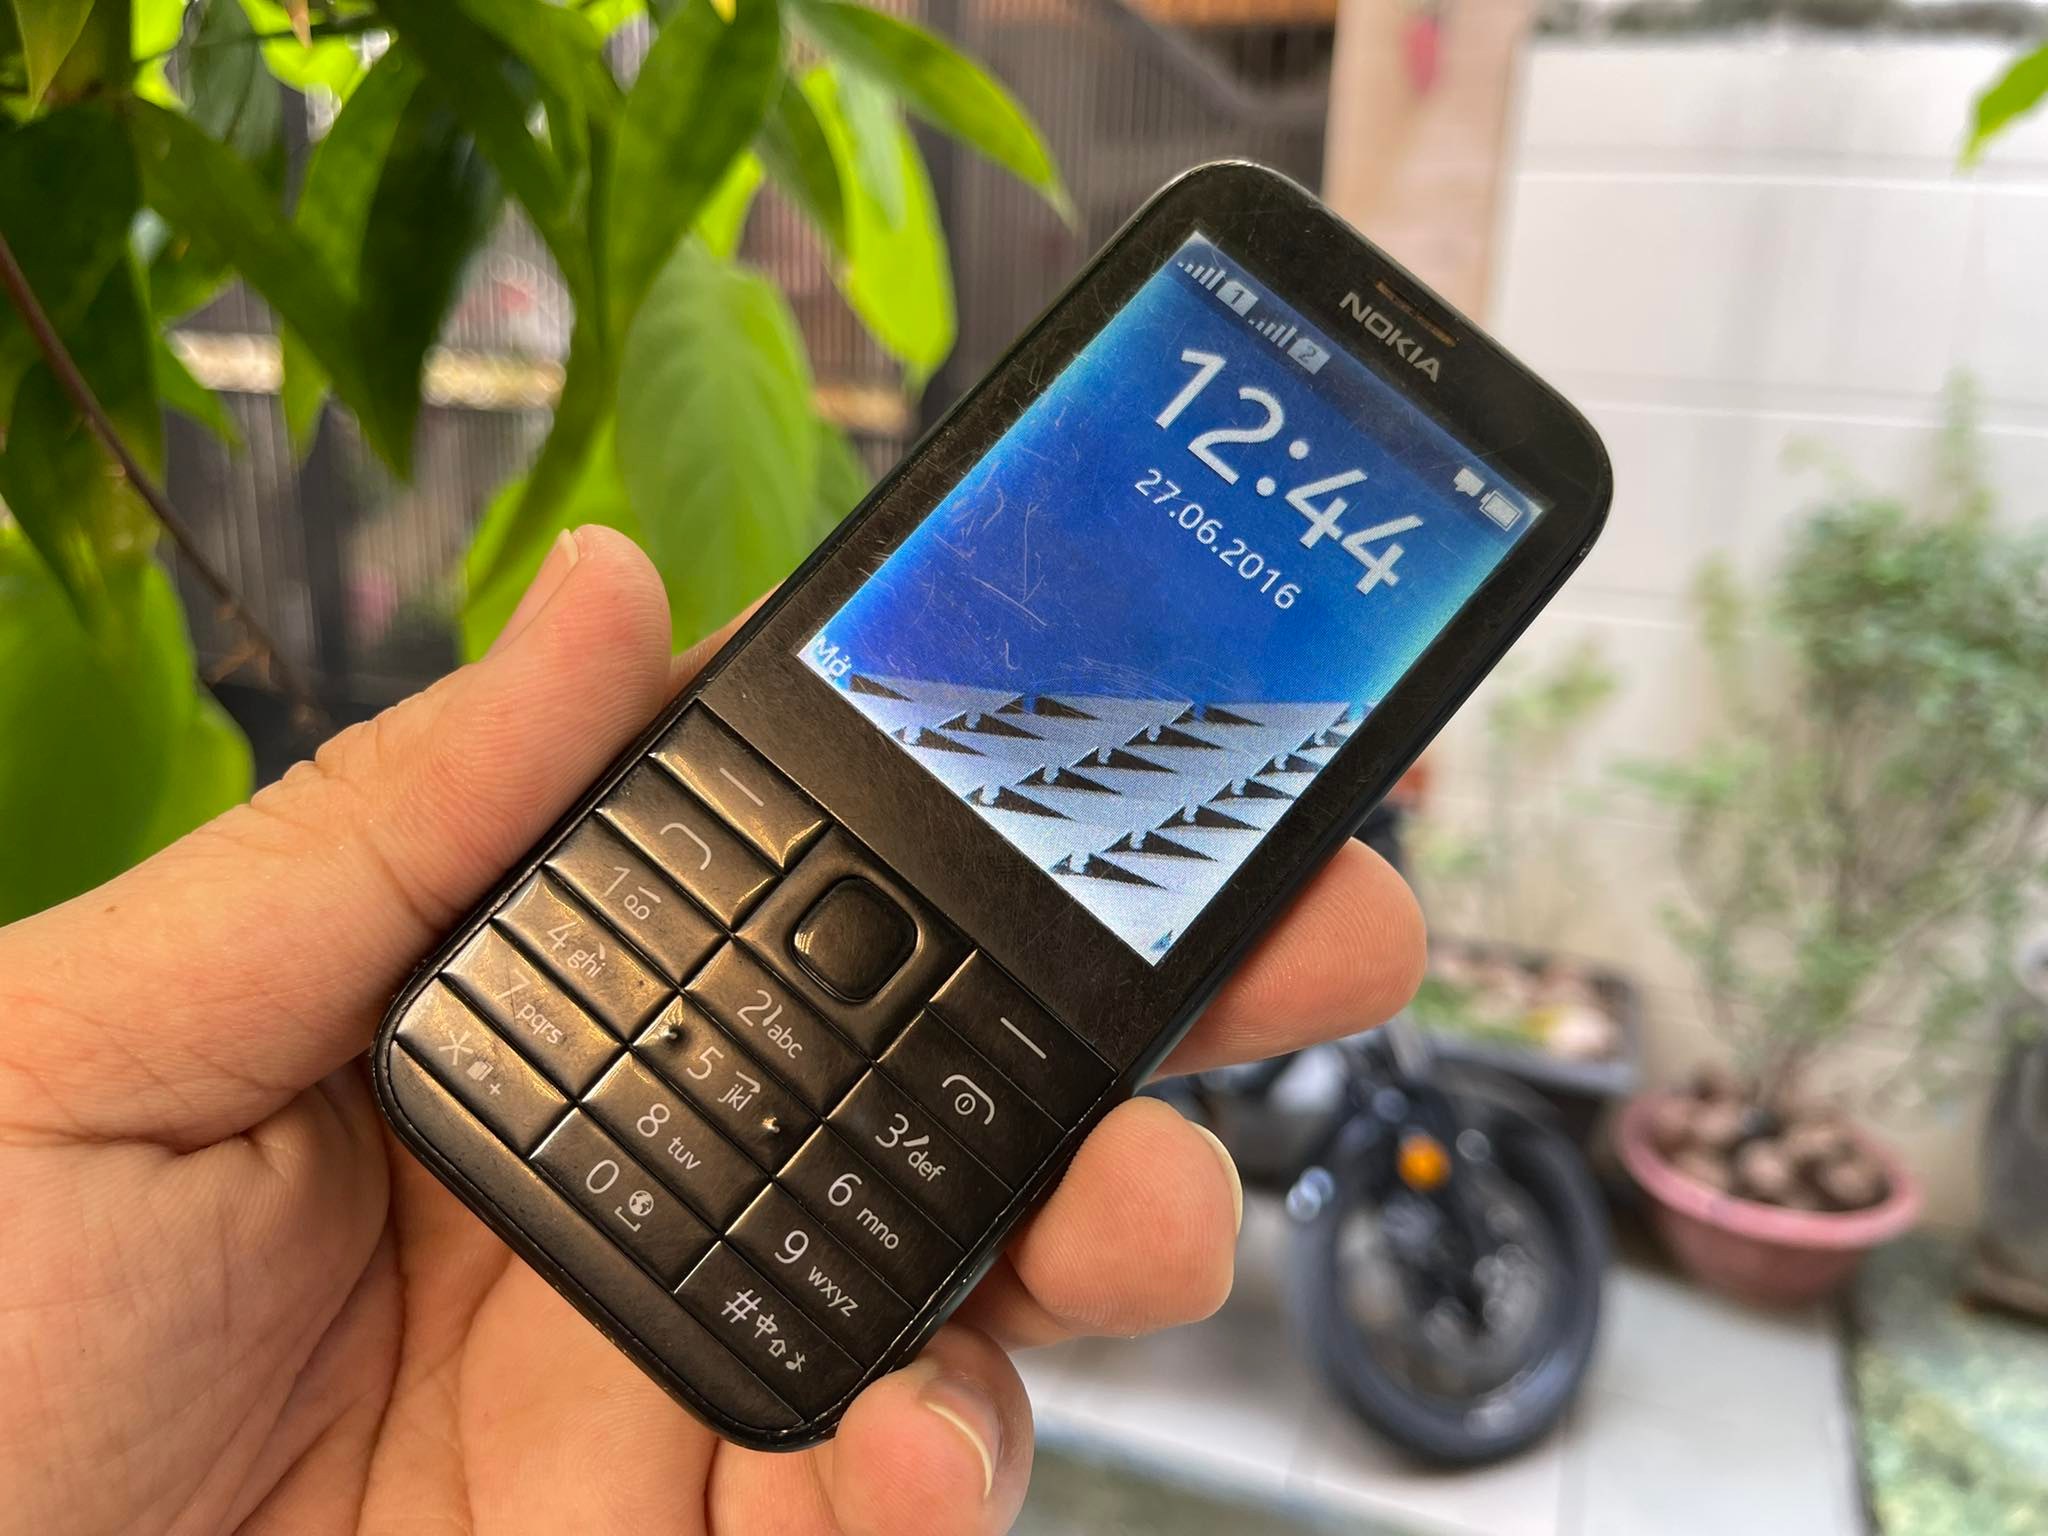 Với chất lượng hàng đầu và độ bền cao, điện thoại Nokia 225 chính hãng sẽ là sự lựa chọn tuyệt vời cho bạn. Hãy xem hình ảnh để khám phá thêm về sản phẩm này!